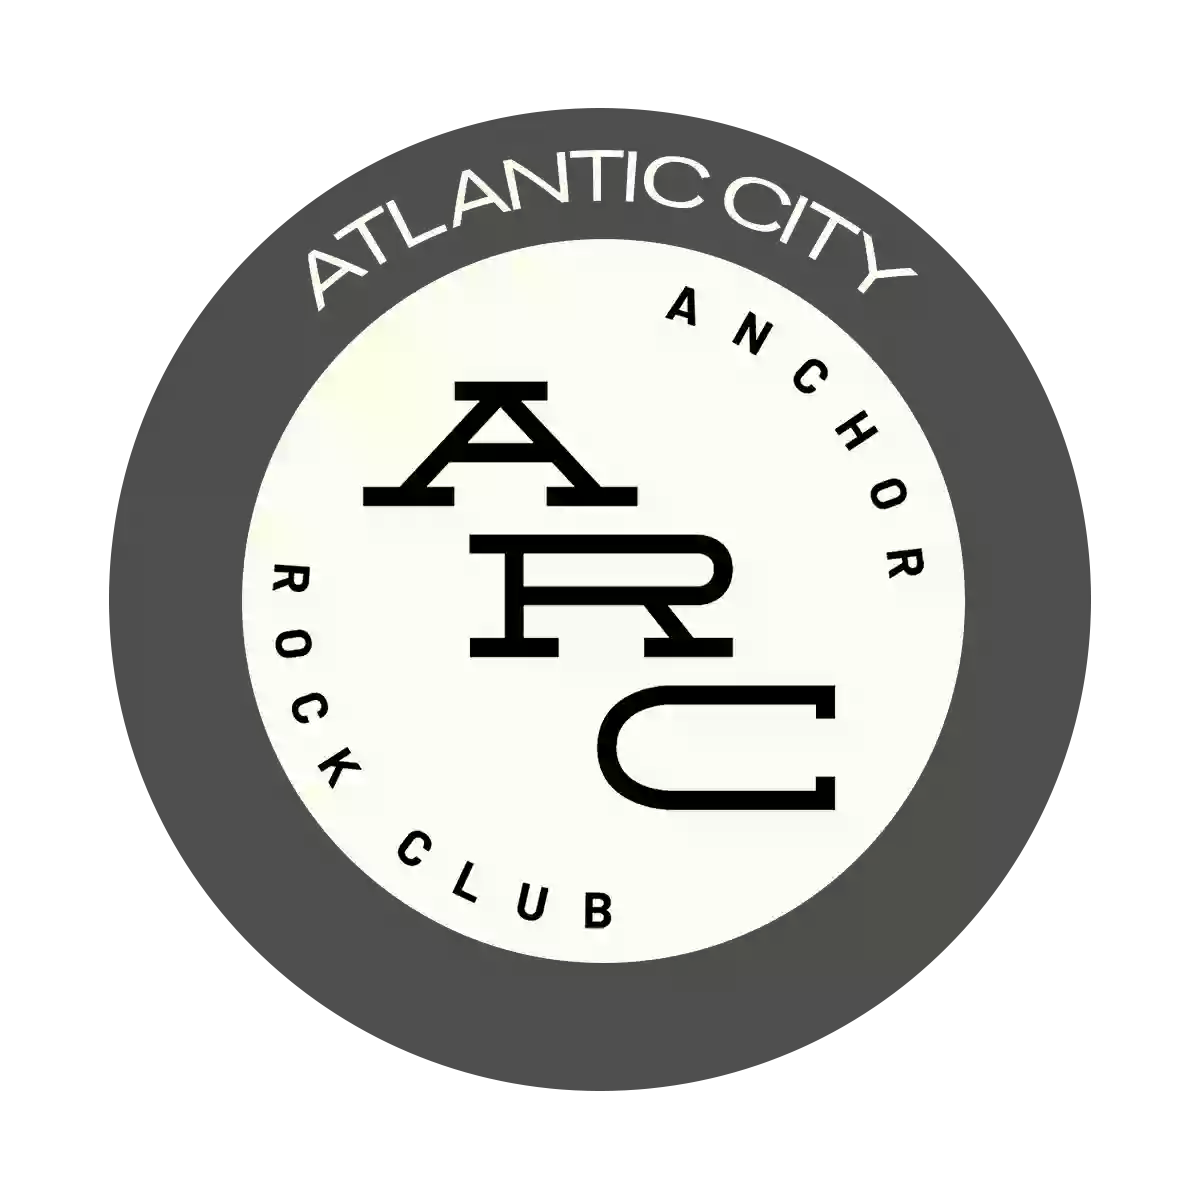 Anchor Rock Club